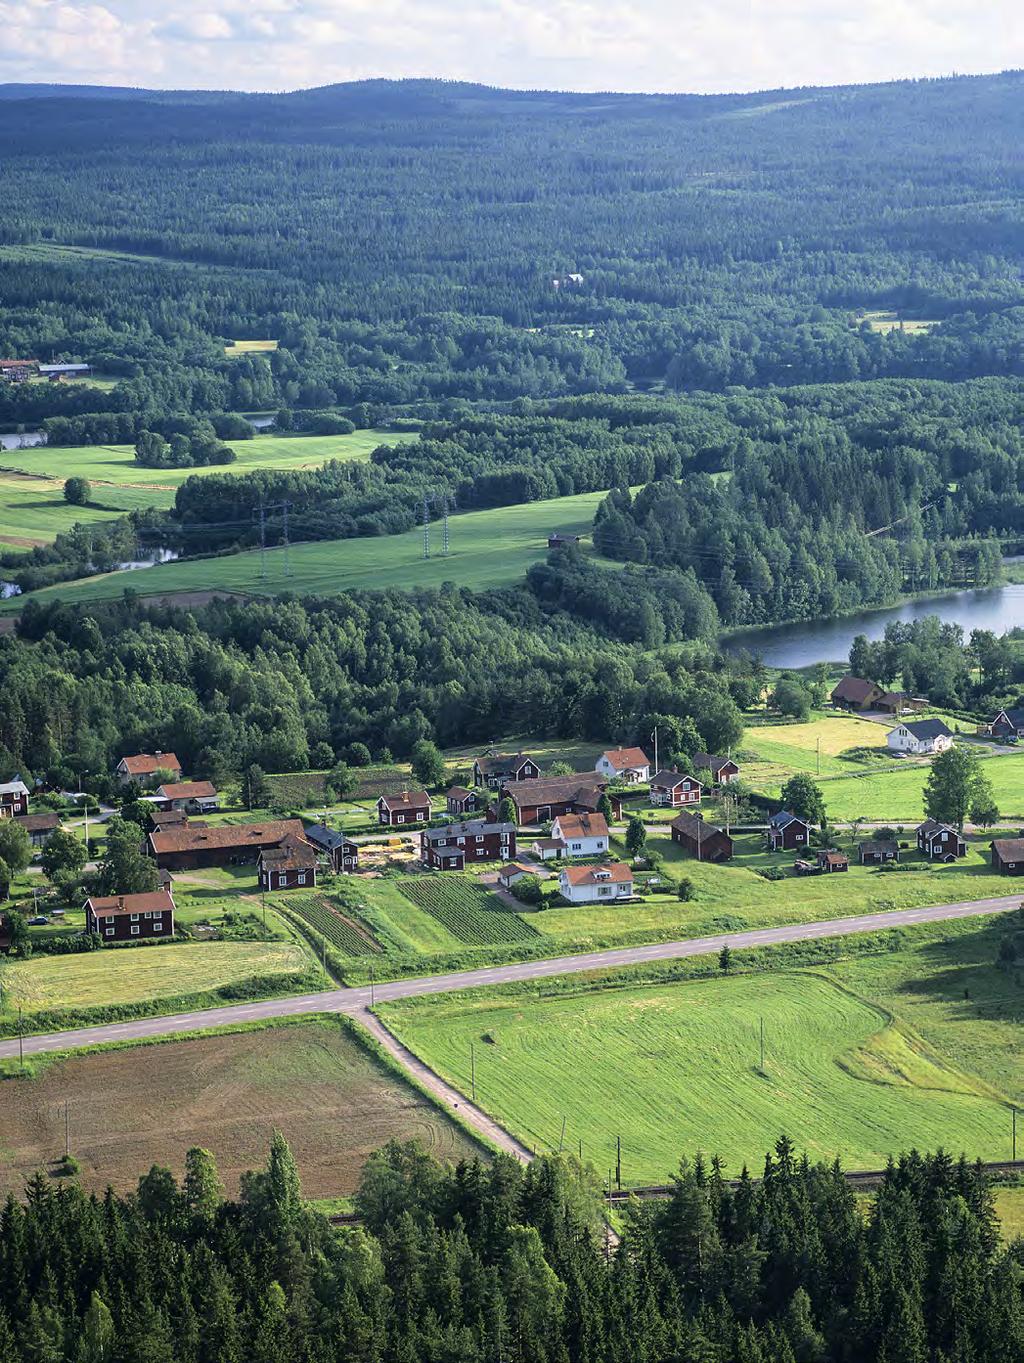 Samhälle Med ansvar för lokalsamhället Spendrups spelar en betydande roll för samhällsutvecklingen i Dalarna och Bergslagen generellt och i Grängesberg och Hällefors i synnerhet.